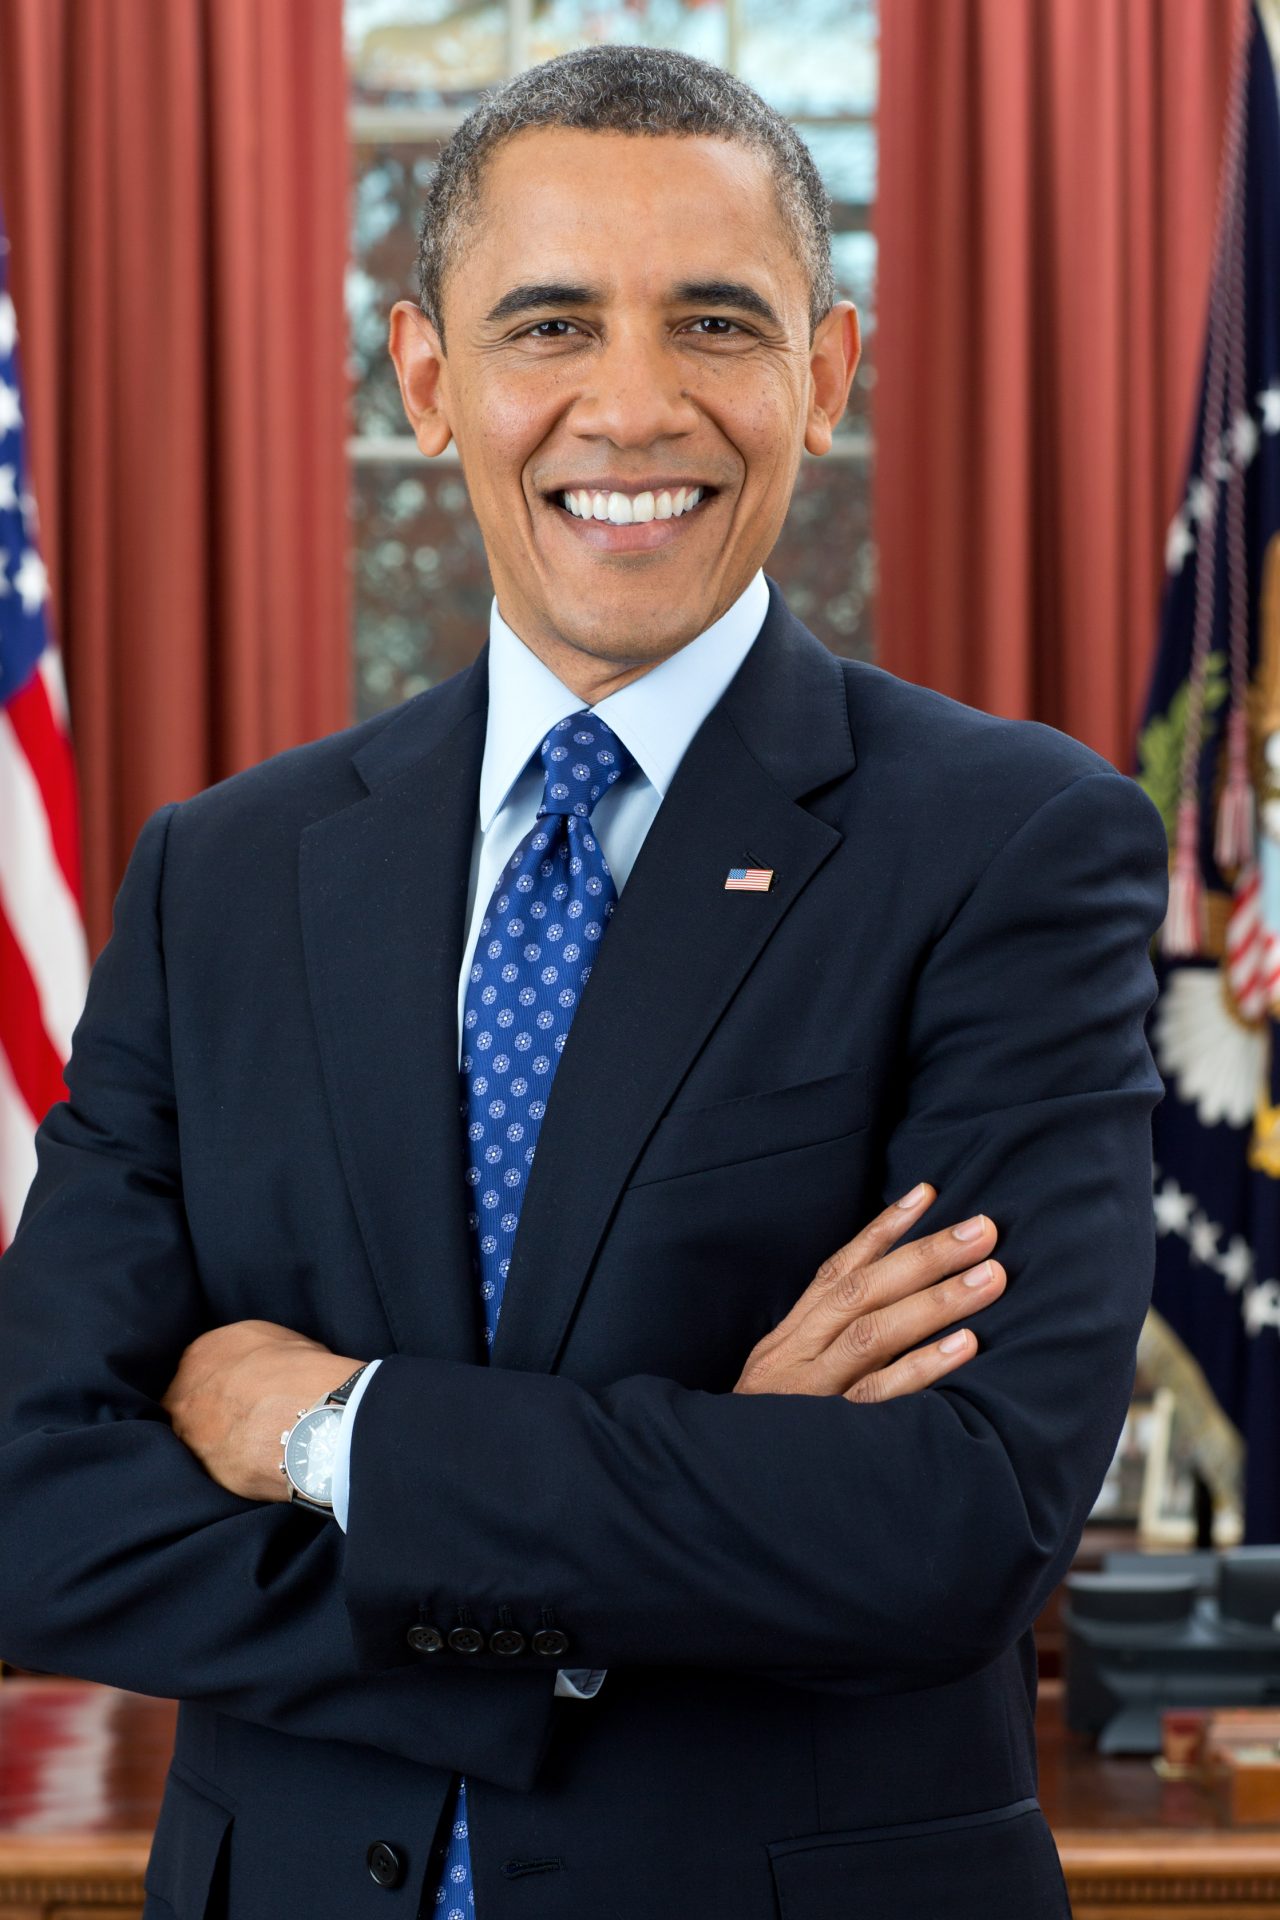 7. Barack Obama